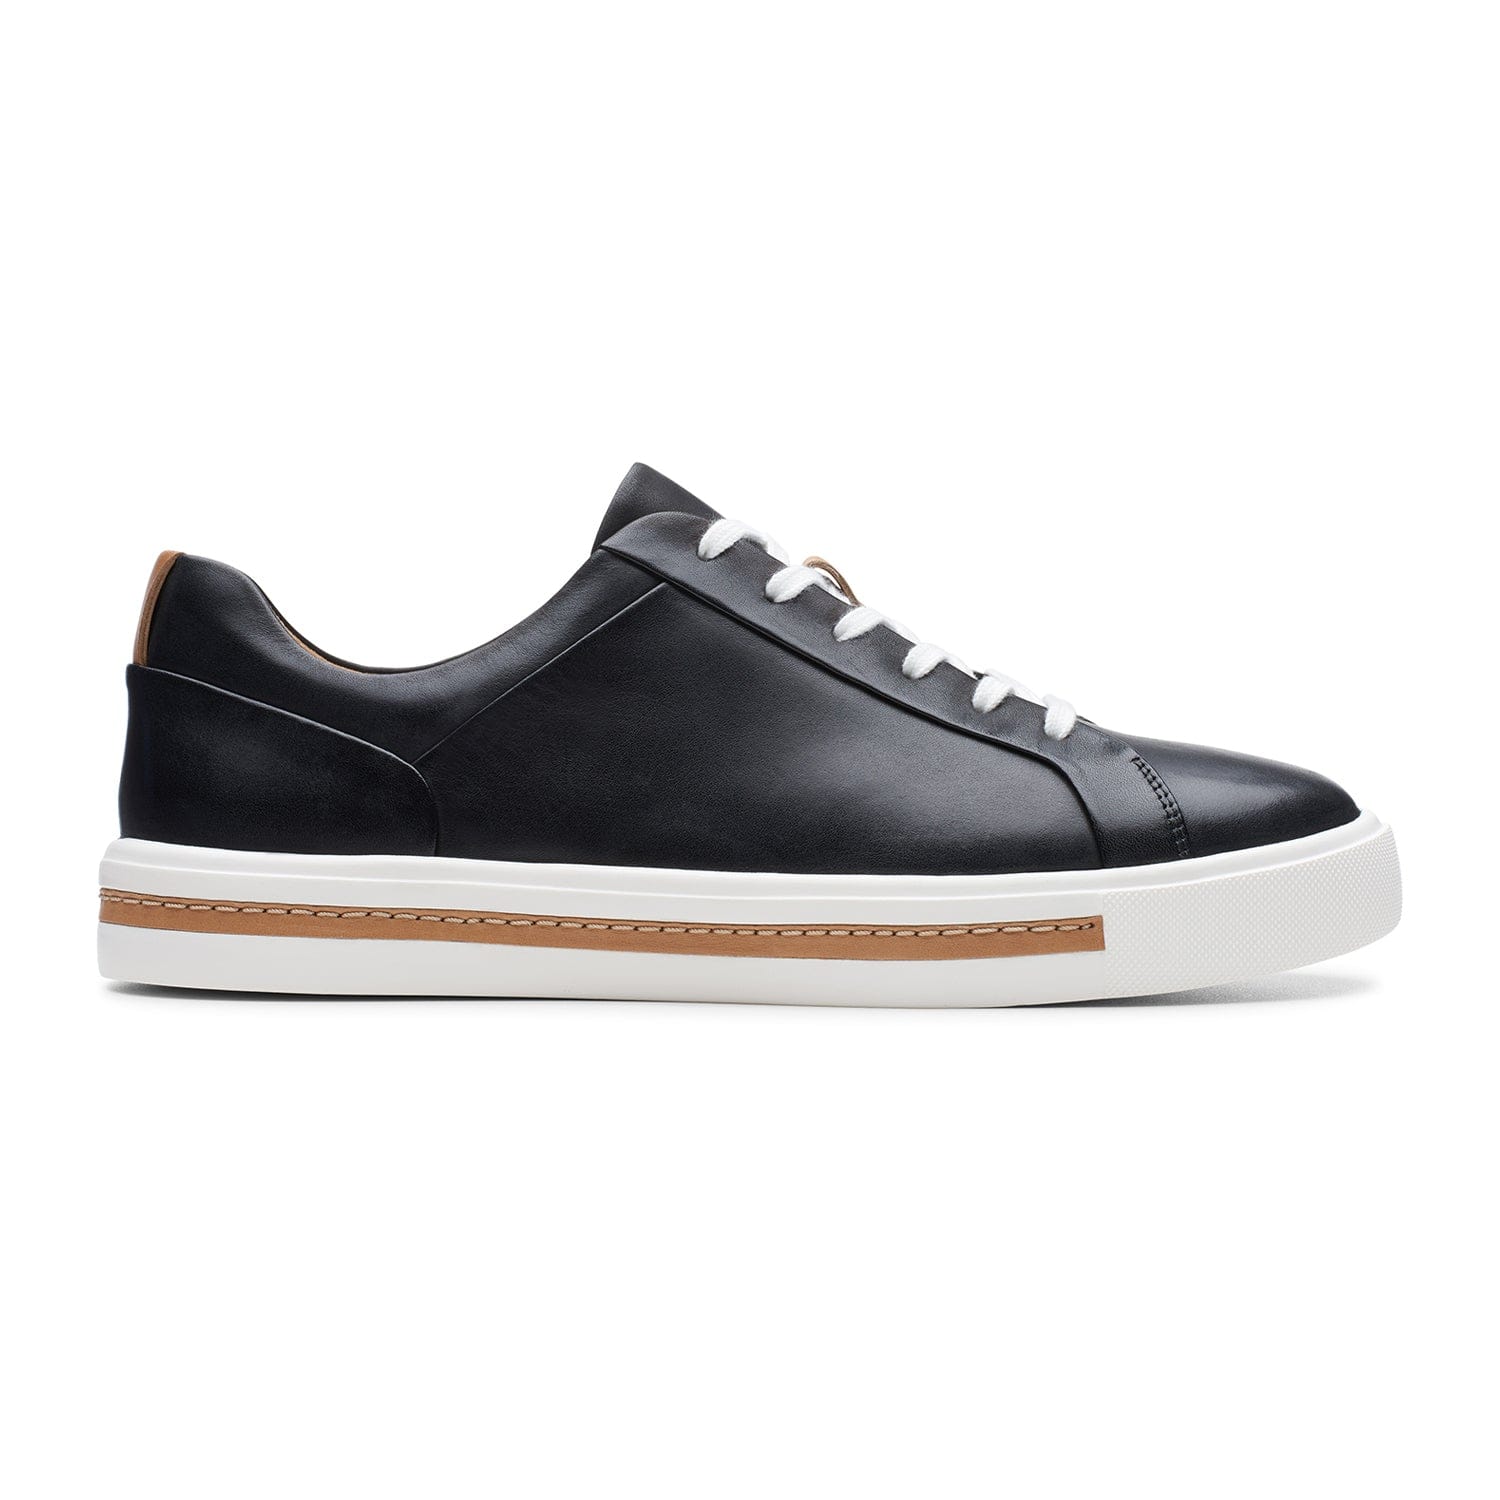 Clarks Un Maui Lace Shoes - Black Leather - 261416425 - E Width (Wide Fit)